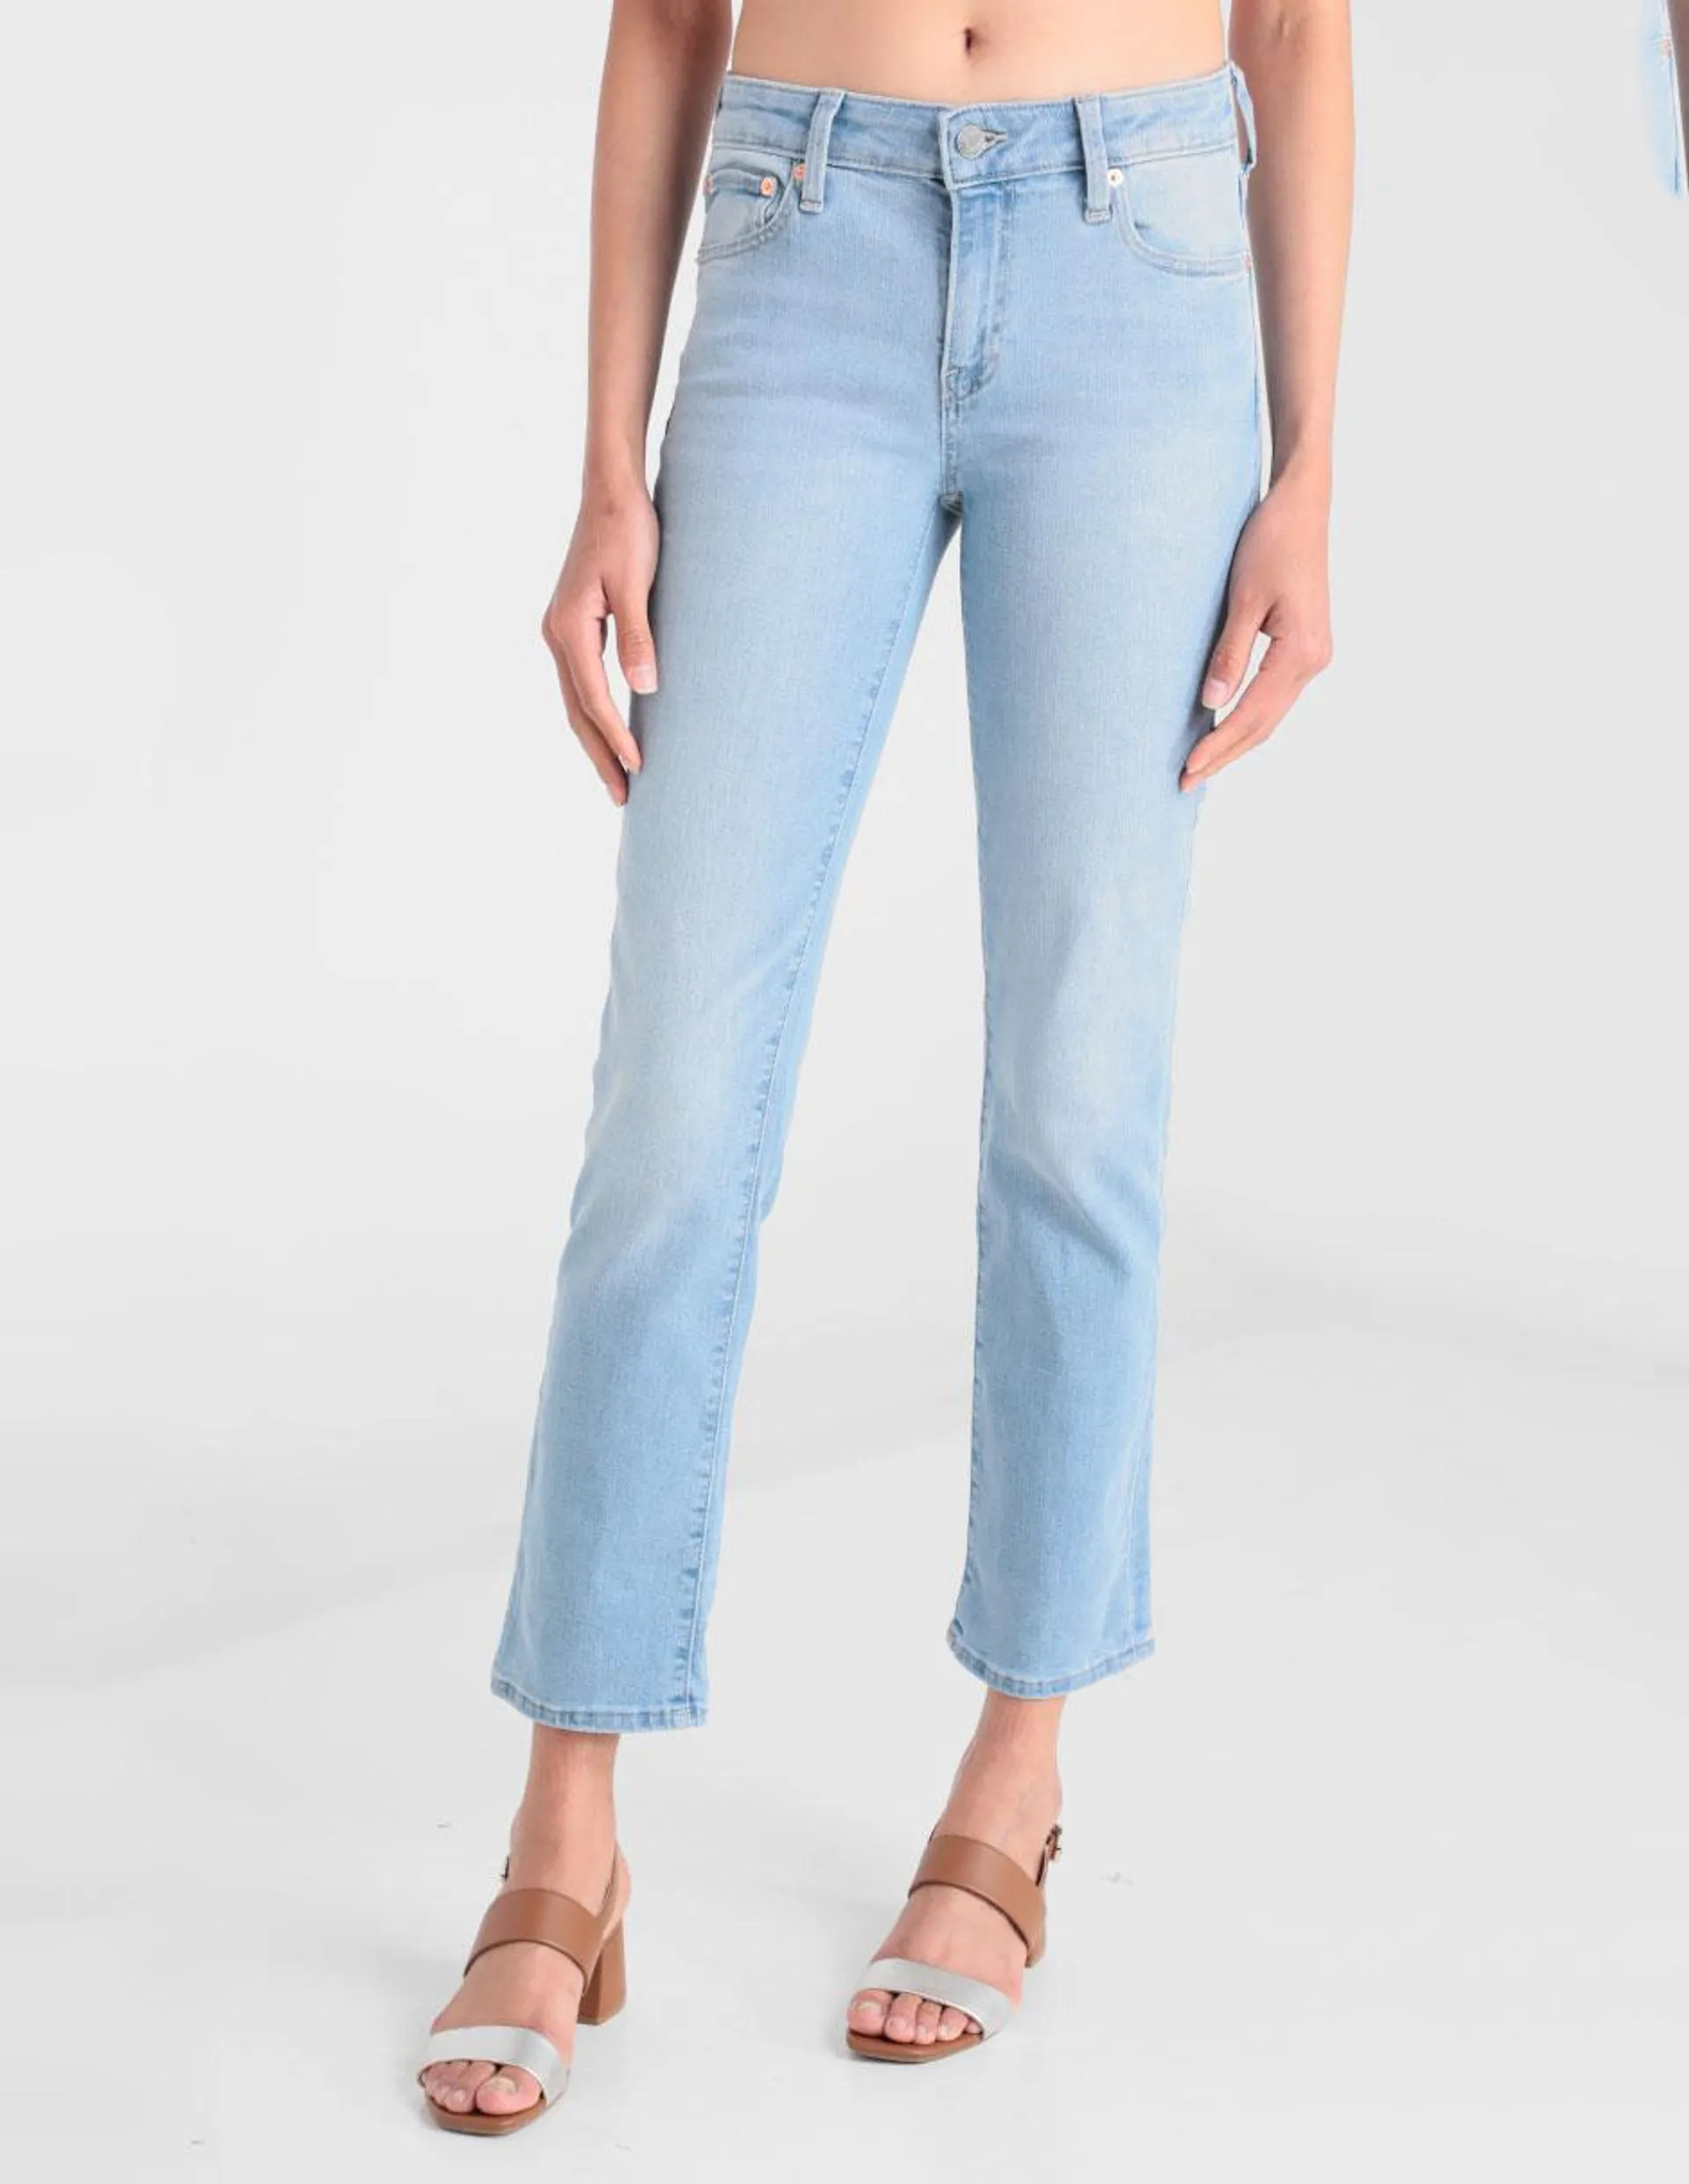 Jeans straight lavado claro corte cintura para mujer